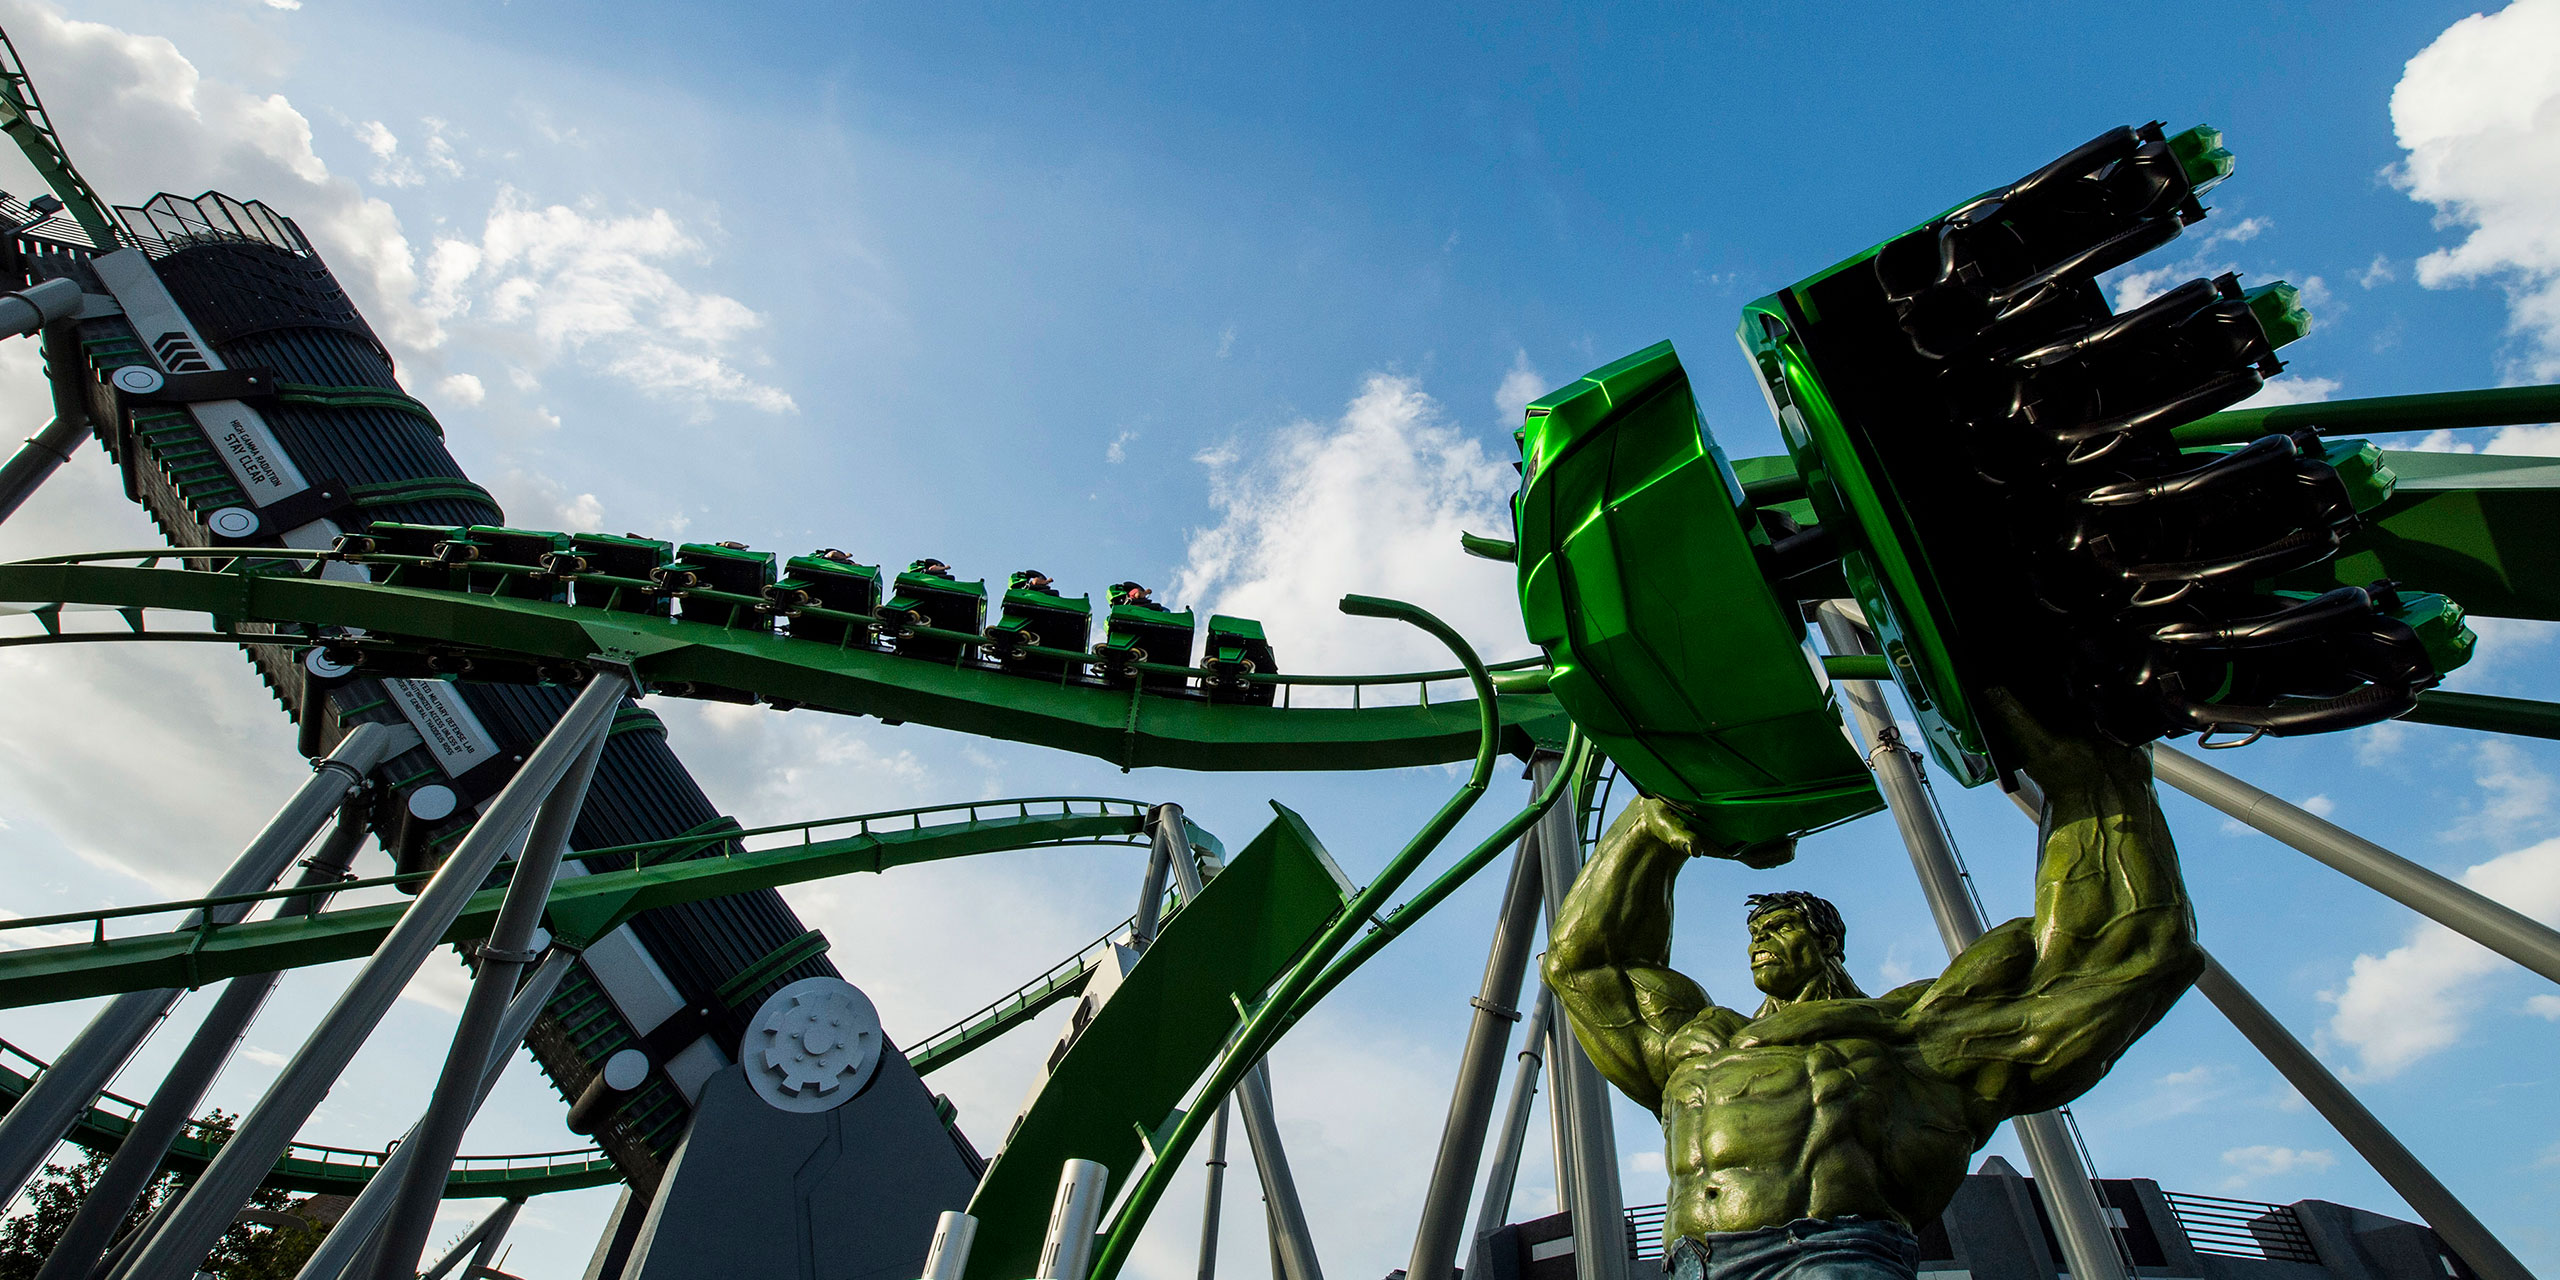 The Incredible Hulk Coaster at Universal Orlando Resort; Courtesy of Universal Orlando Resort